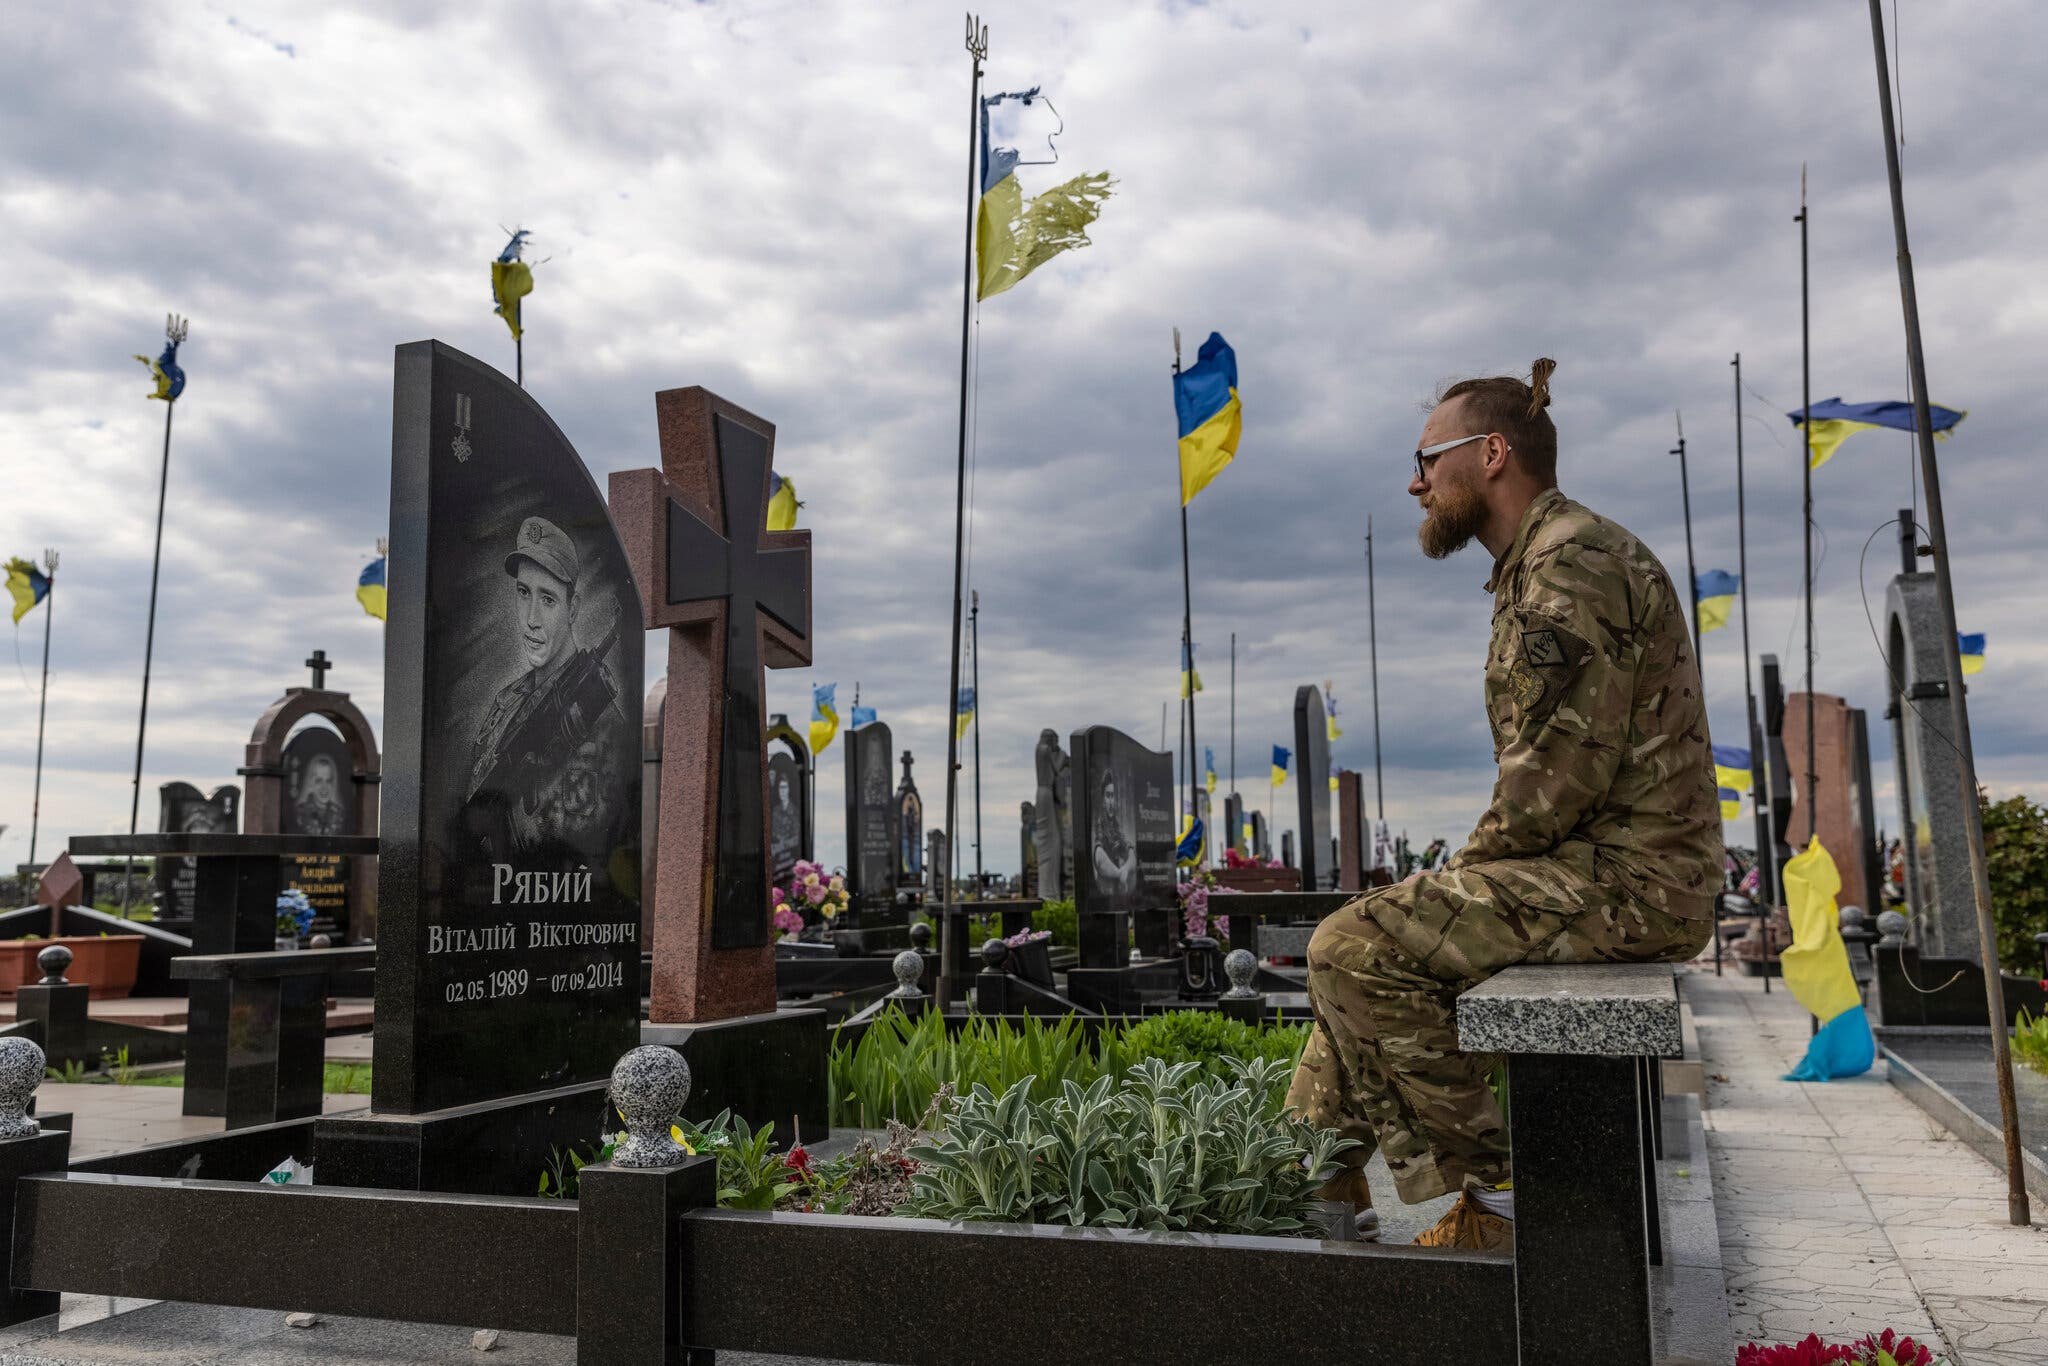 Иван Лут, доброволец территориальной обороны, на участке для ветеранов на Черниговском кладбище. После падения самолета господин Лут и члены его отряда примчались на место происшествия